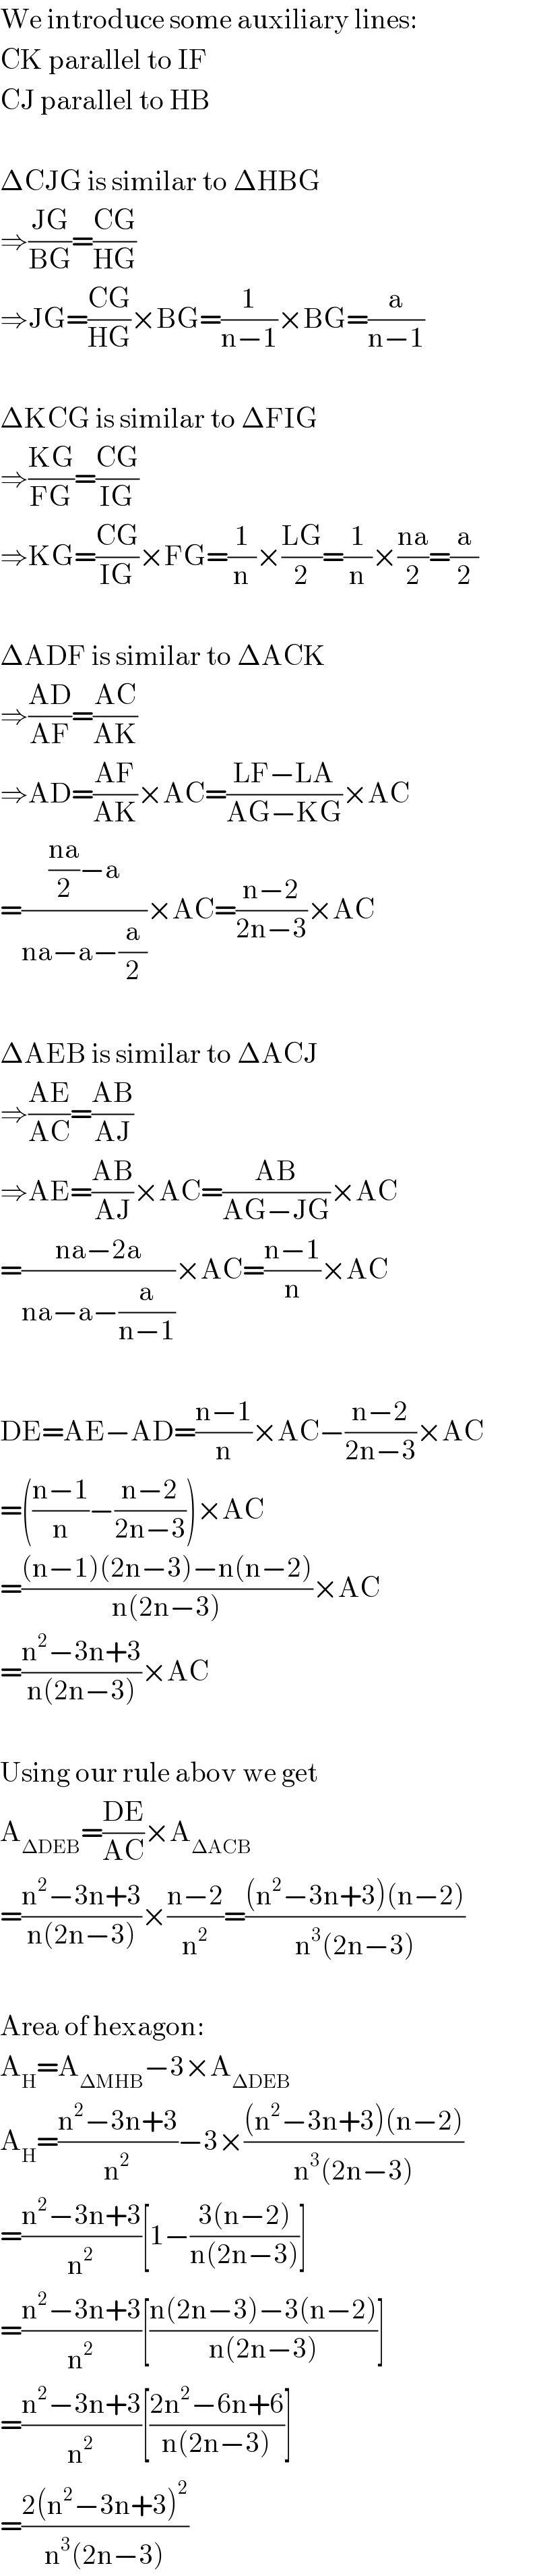 We introduce some auxiliary lines:  CK parallel to IF  CJ parallel to HB    ΔCJG is similar to ΔHBG  ⇒((JG)/(BG))=((CG)/(HG))  ⇒JG=((CG)/(HG))×BG=(1/(n−1))×BG=(a/(n−1))    ΔKCG is similar to ΔFIG  ⇒((KG)/(FG))=((CG)/(IG))  ⇒KG=((CG)/(IG))×FG=(1/n)×((LG)/2)=(1/n)×((na)/2)=(a/2)    ΔADF is similar to ΔACK  ⇒((AD)/(AF))=((AC)/(AK))  ⇒AD=((AF)/(AK))×AC=((LF−LA)/(AG−KG))×AC  =((((na)/2)−a)/(na−a−(a/2)))×AC=((n−2)/(2n−3))×AC    ΔAEB is similar to ΔACJ  ⇒((AE)/(AC))=((AB)/(AJ))  ⇒AE=((AB)/(AJ))×AC=((AB)/(AG−JG))×AC  =((na−2a)/(na−a−(a/(n−1))))×AC=((n−1)/n)×AC    DE=AE−AD=((n−1)/n)×AC−((n−2)/(2n−3))×AC  =(((n−1)/n)−((n−2)/(2n−3)))×AC  =(((n−1)(2n−3)−n(n−2))/(n(2n−3)))×AC  =((n^2 −3n+3)/(n(2n−3)))×AC    Using our rule abov we get  A_(ΔDEB) =((DE)/(AC))×A_(ΔACB)   =((n^2 −3n+3)/(n(2n−3)))×((n−2)/n^2 )=(((n^2 −3n+3)(n−2))/(n^3 (2n−3)))    Area of hexagon:  A_H =A_(ΔMHB) −3×A_(ΔDEB)   A_H =((n^2 −3n+3)/n^2 )−3×(((n^2 −3n+3)(n−2))/(n^3 (2n−3)))  =((n^2 −3n+3)/n^2 )[1−((3(n−2))/(n(2n−3)))]  =((n^2 −3n+3)/n^2 )[((n(2n−3)−3(n−2))/(n(2n−3)))]  =((n^2 −3n+3)/n^2 )[((2n^2 −6n+6)/(n(2n−3)))]  =((2(n^2 −3n+3)^2 )/(n^3 (2n−3)))  